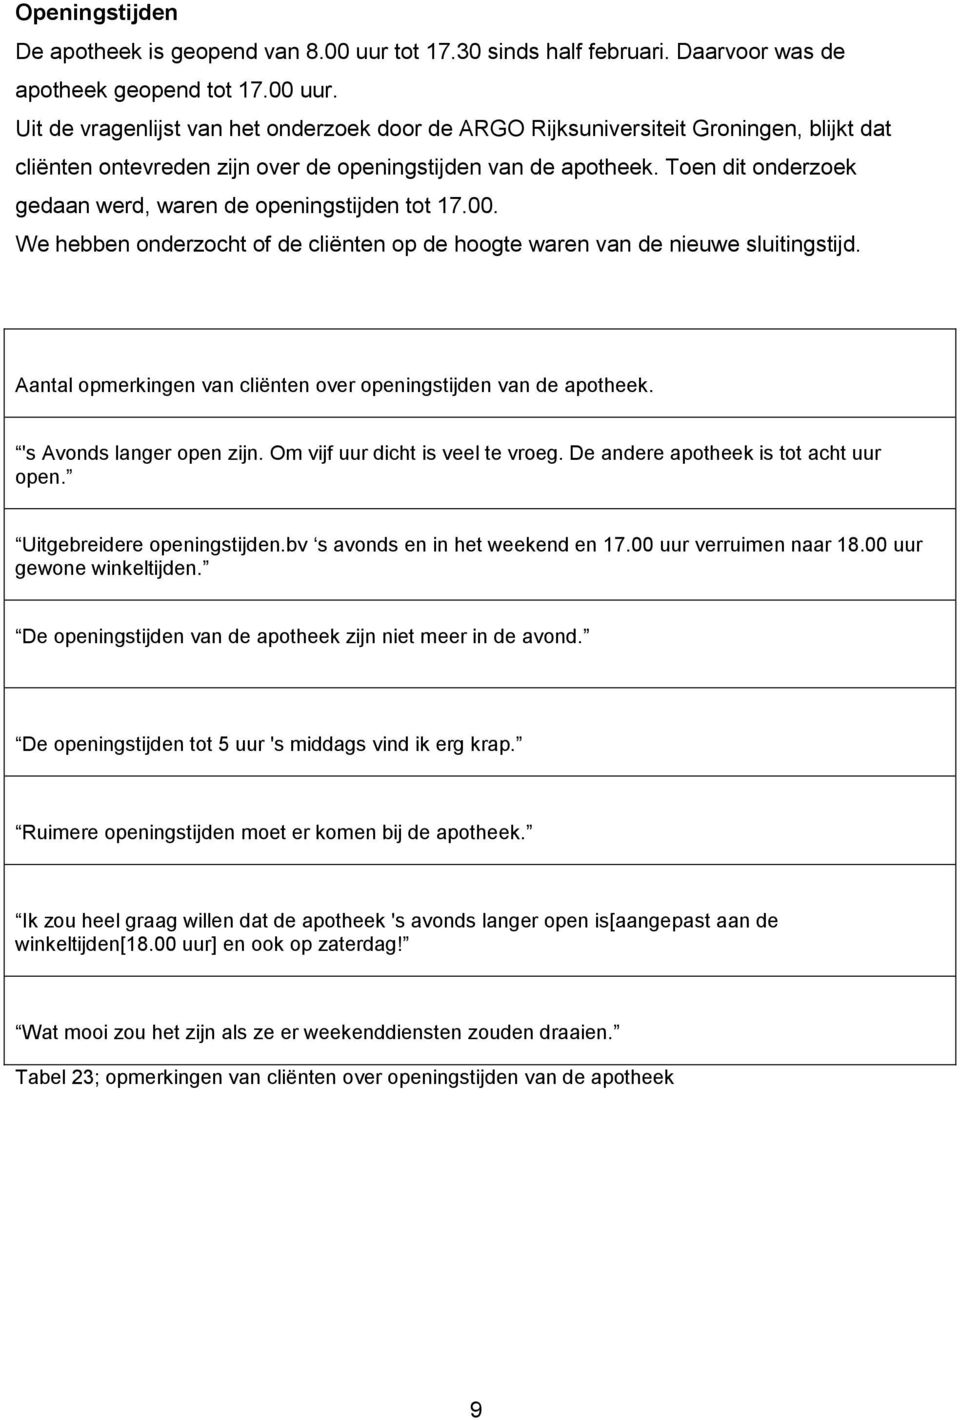 Uit de vragenlijst van het onderzoek door de ARGO Rijksuniversiteit Groningen, blijkt dat cliënten ontevreden zijn over de openingstijden van de apotheek.